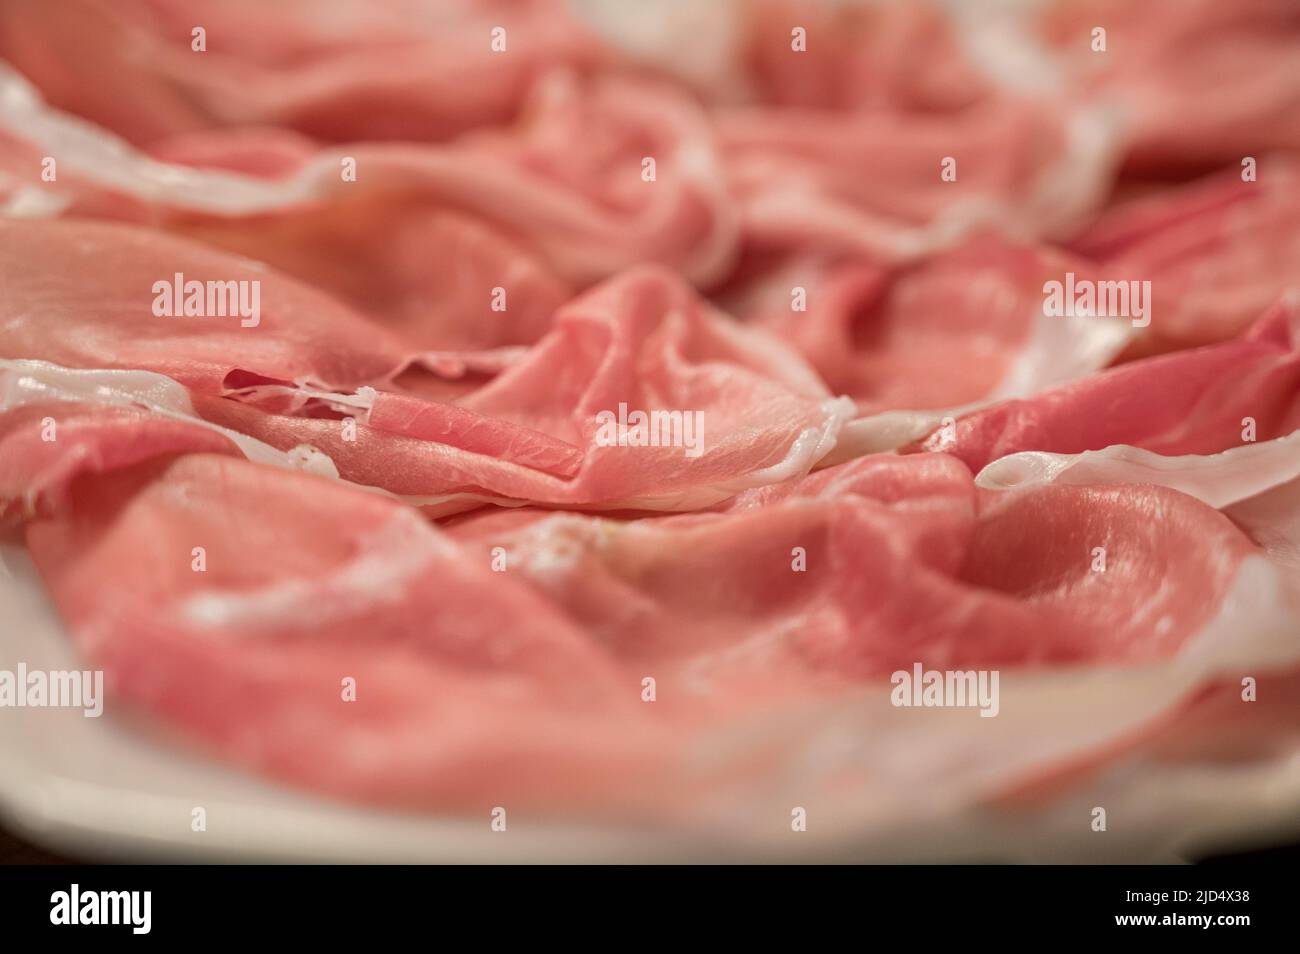 san daniele ham in italy Friuli venezia giulia Stock Photo